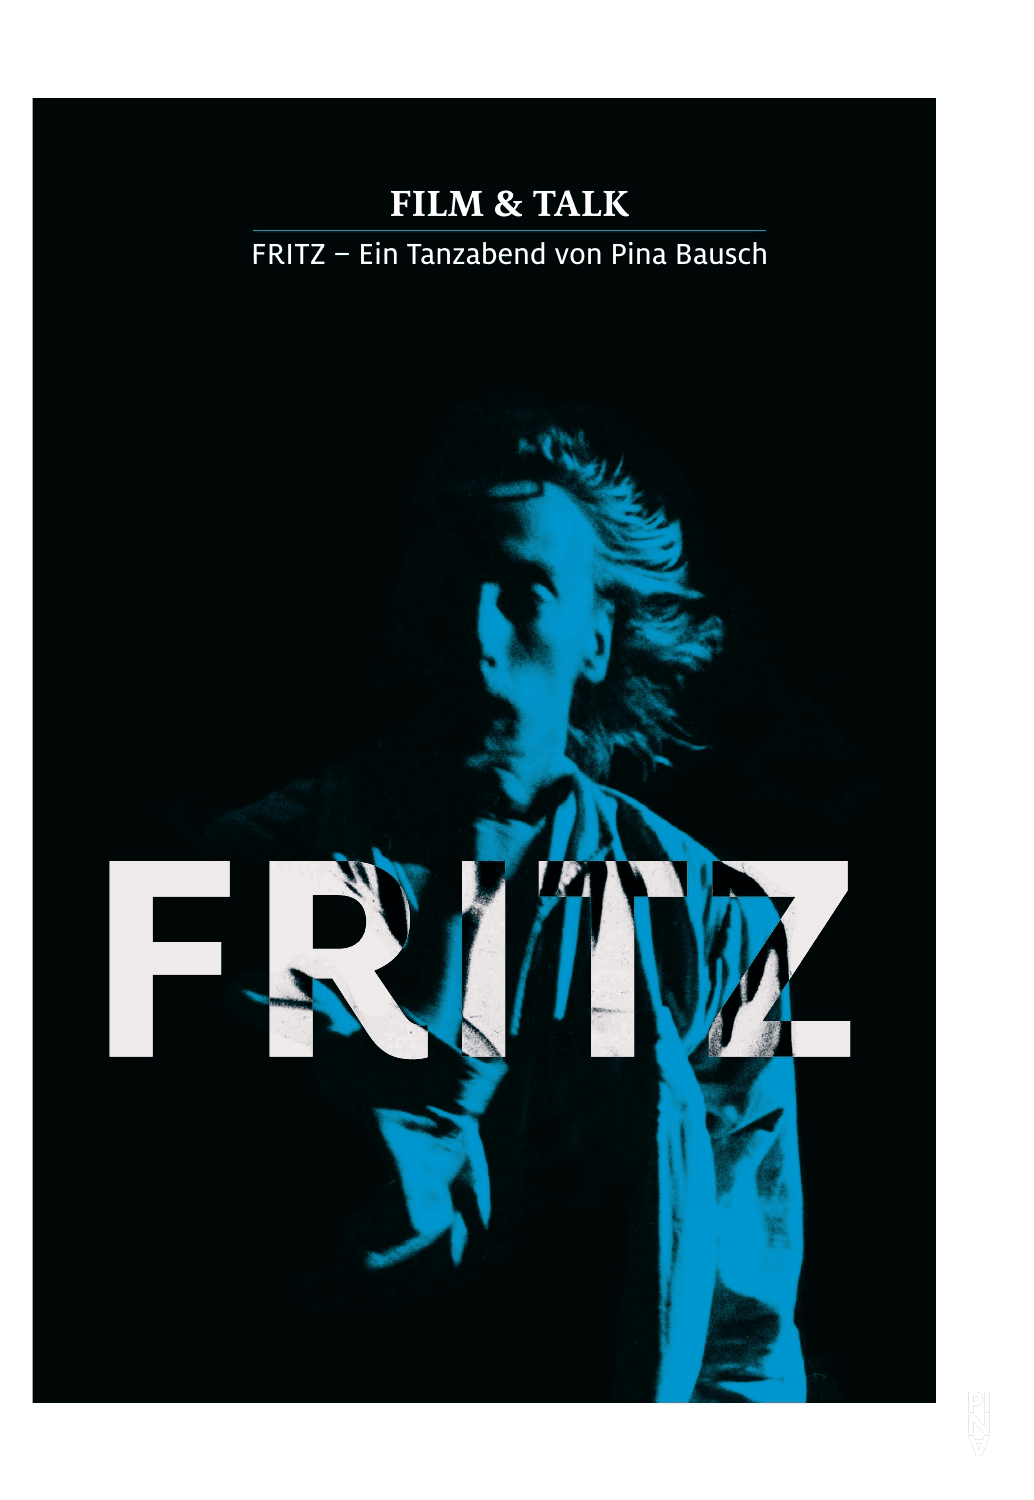 Programme de Fritz – Ein Tanzabend von Pina Bausch, Cinéma & discussion, 30 avril 2015